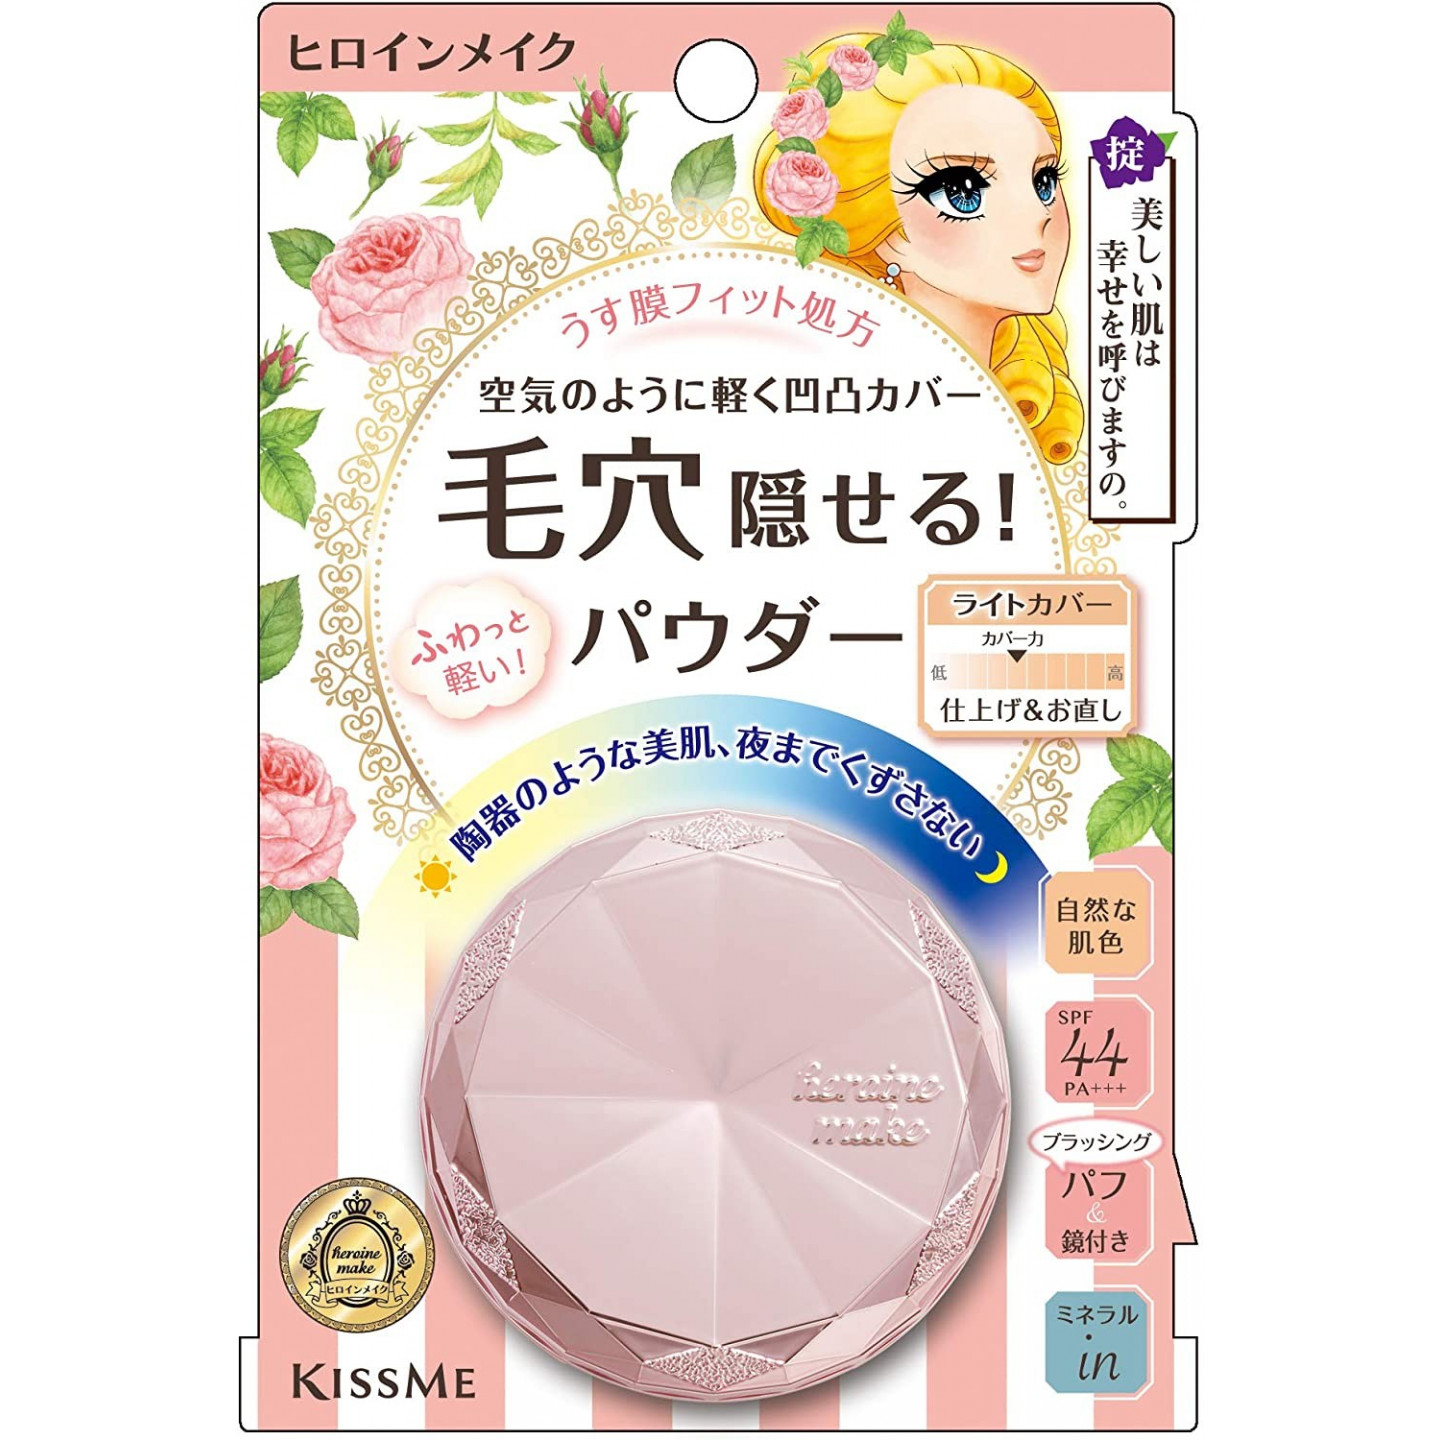 日本KissMe | 美白遮瑕蜜粉 | 防晒 | 粉盒 | Powder SPF44 PA+++ 